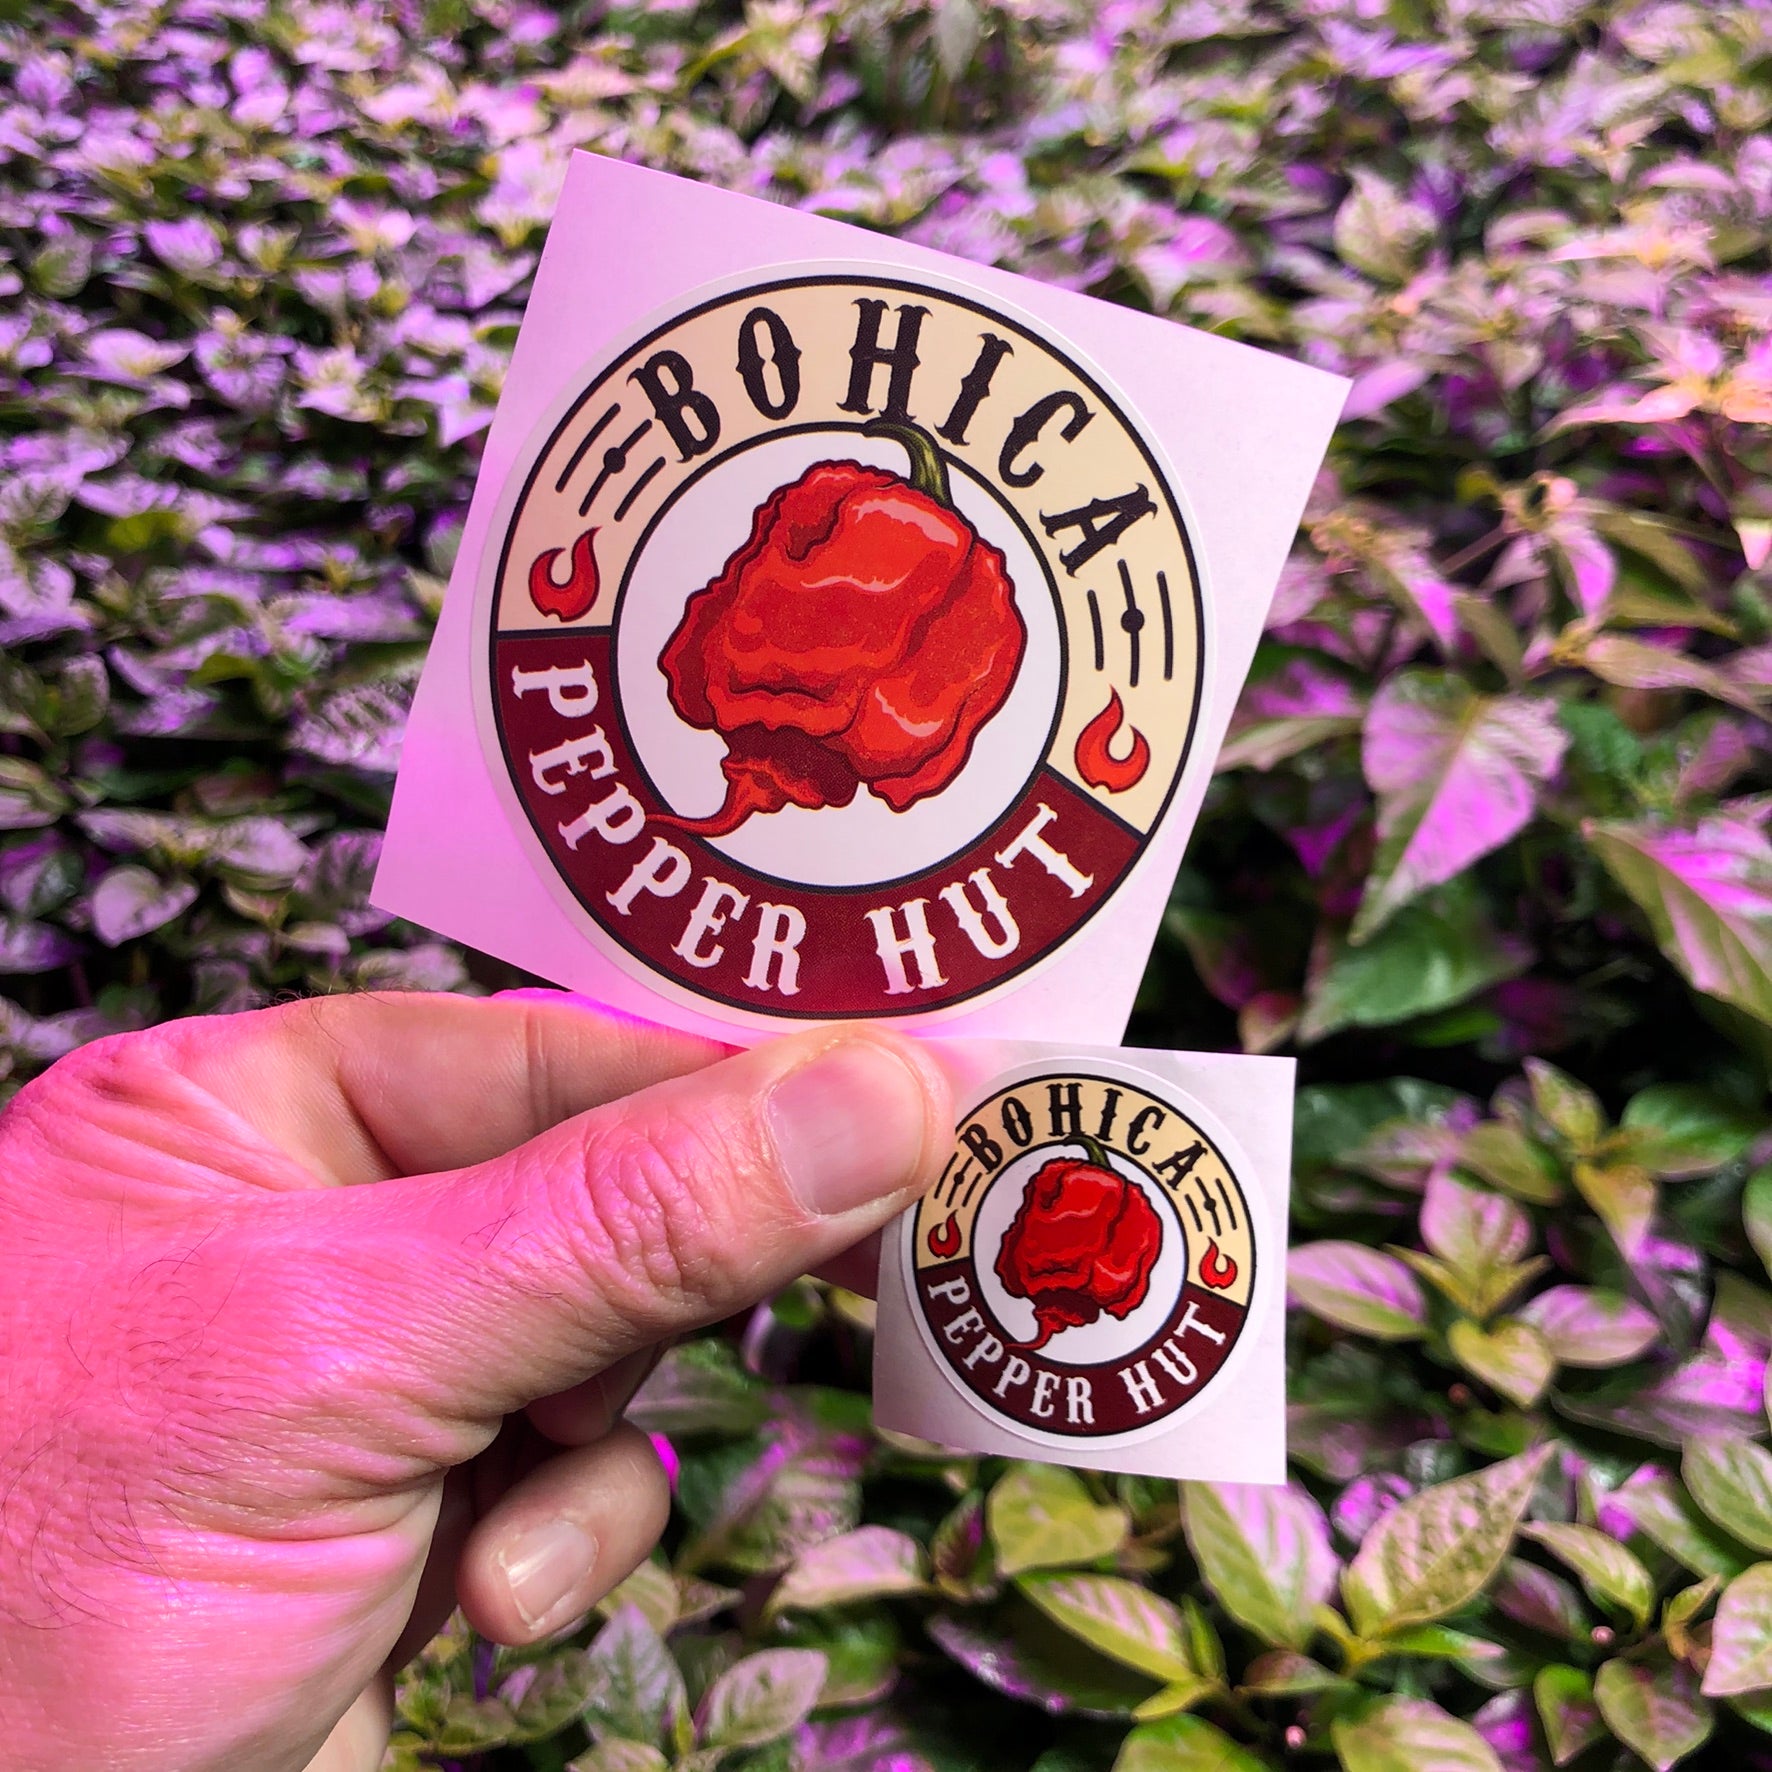 1.5 Inch Sticker - Bohica Pepper Hut - Bohica Pepper Hut 